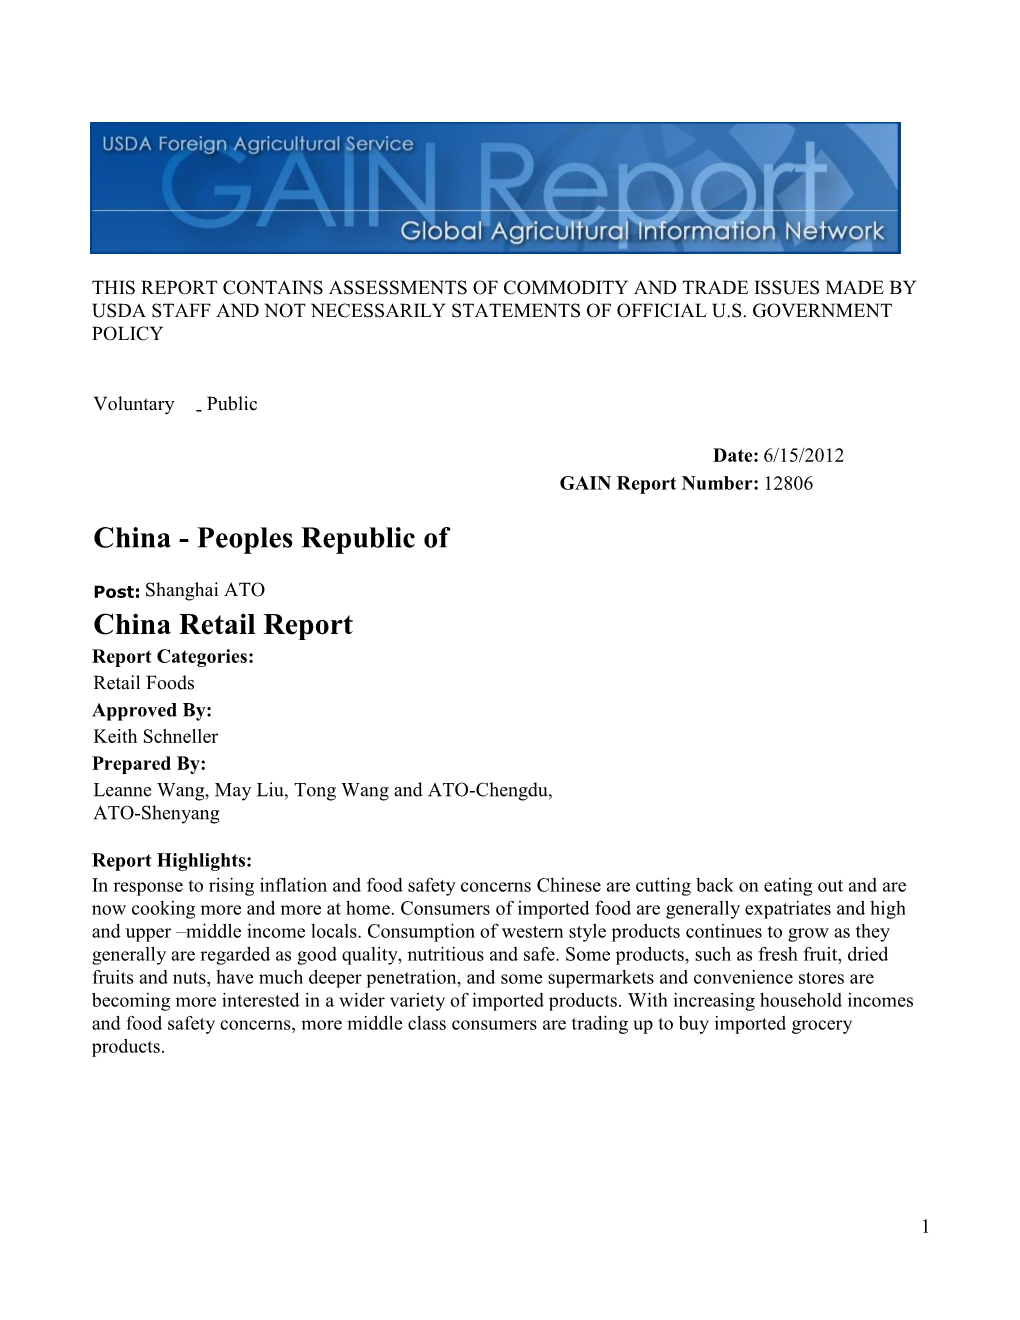 China Retail Report China